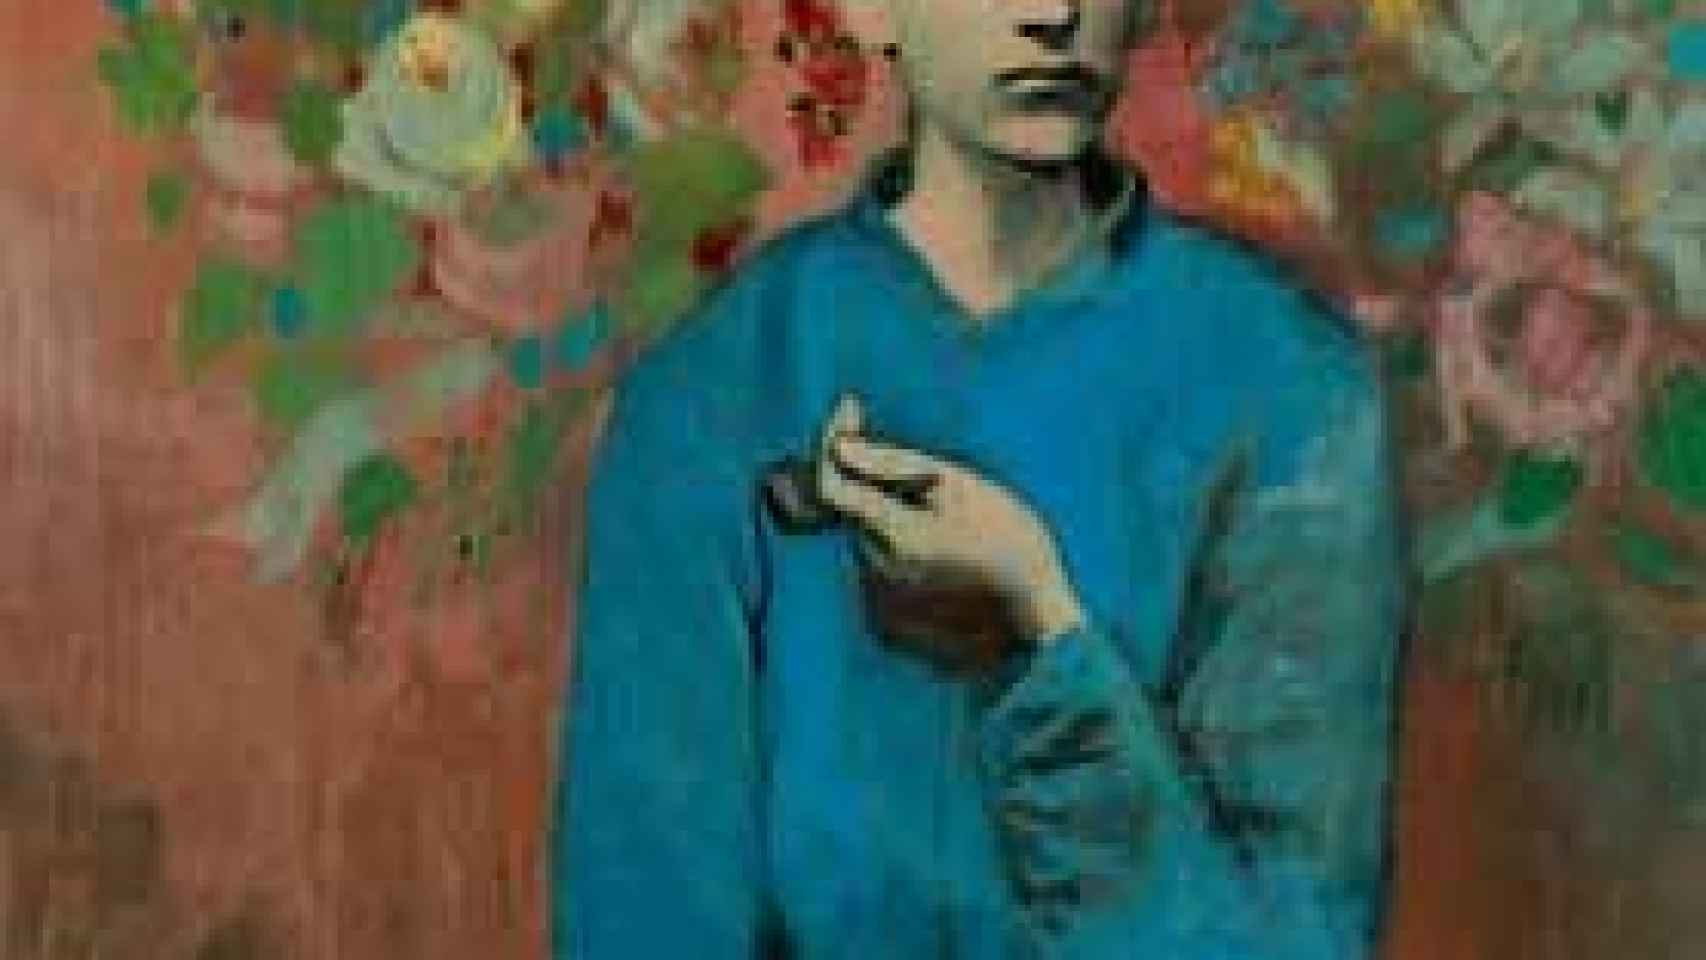 Image: ¿Puede Picasso desbancar a Van Gogh?